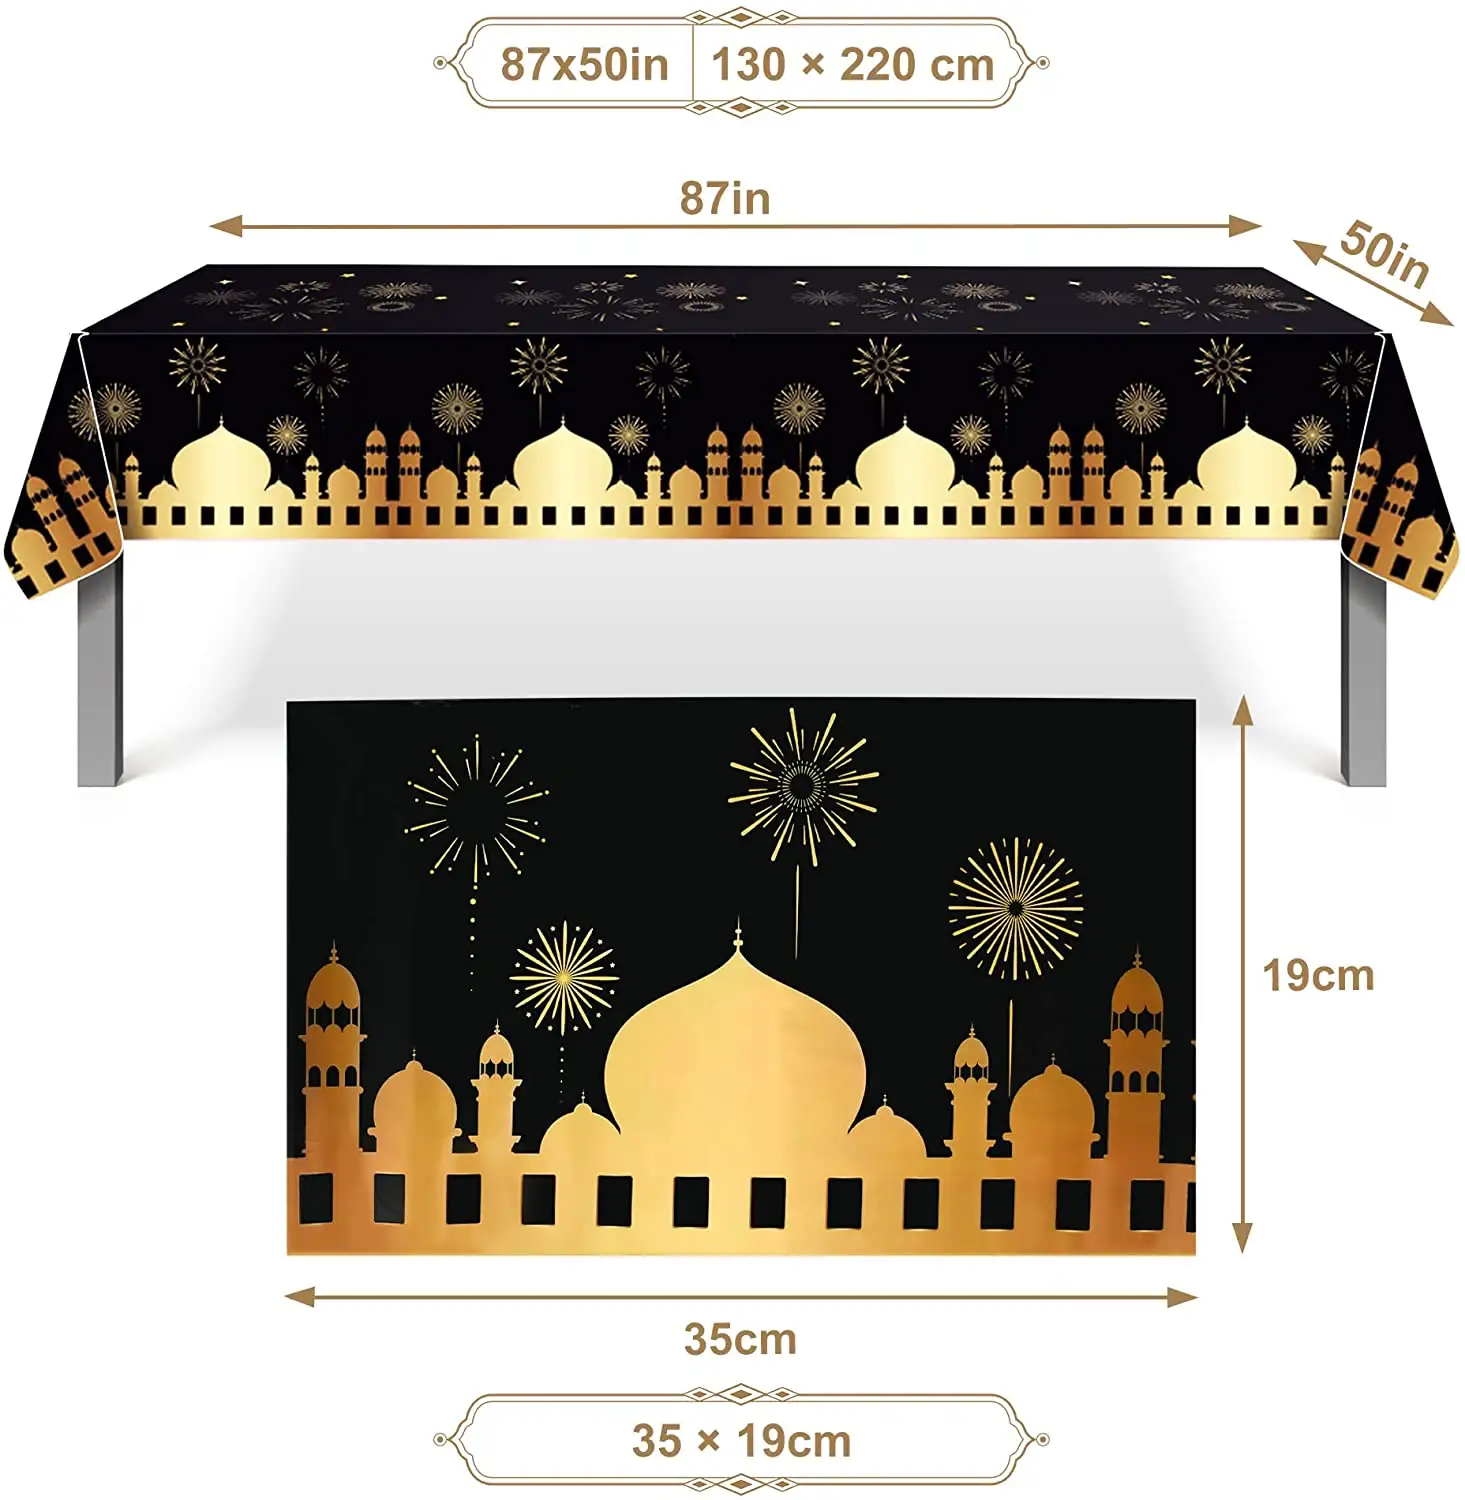 مفرش طاولة بلاستيكي مضاد للماء يُستخدم لمرة واحدة في شهر رمضان مبارك ومناسب لحفلات عيد مبارك وهو زينة زينة سوداء مصنوعة يدويًا ومزودة بنباتات مربعة خالية